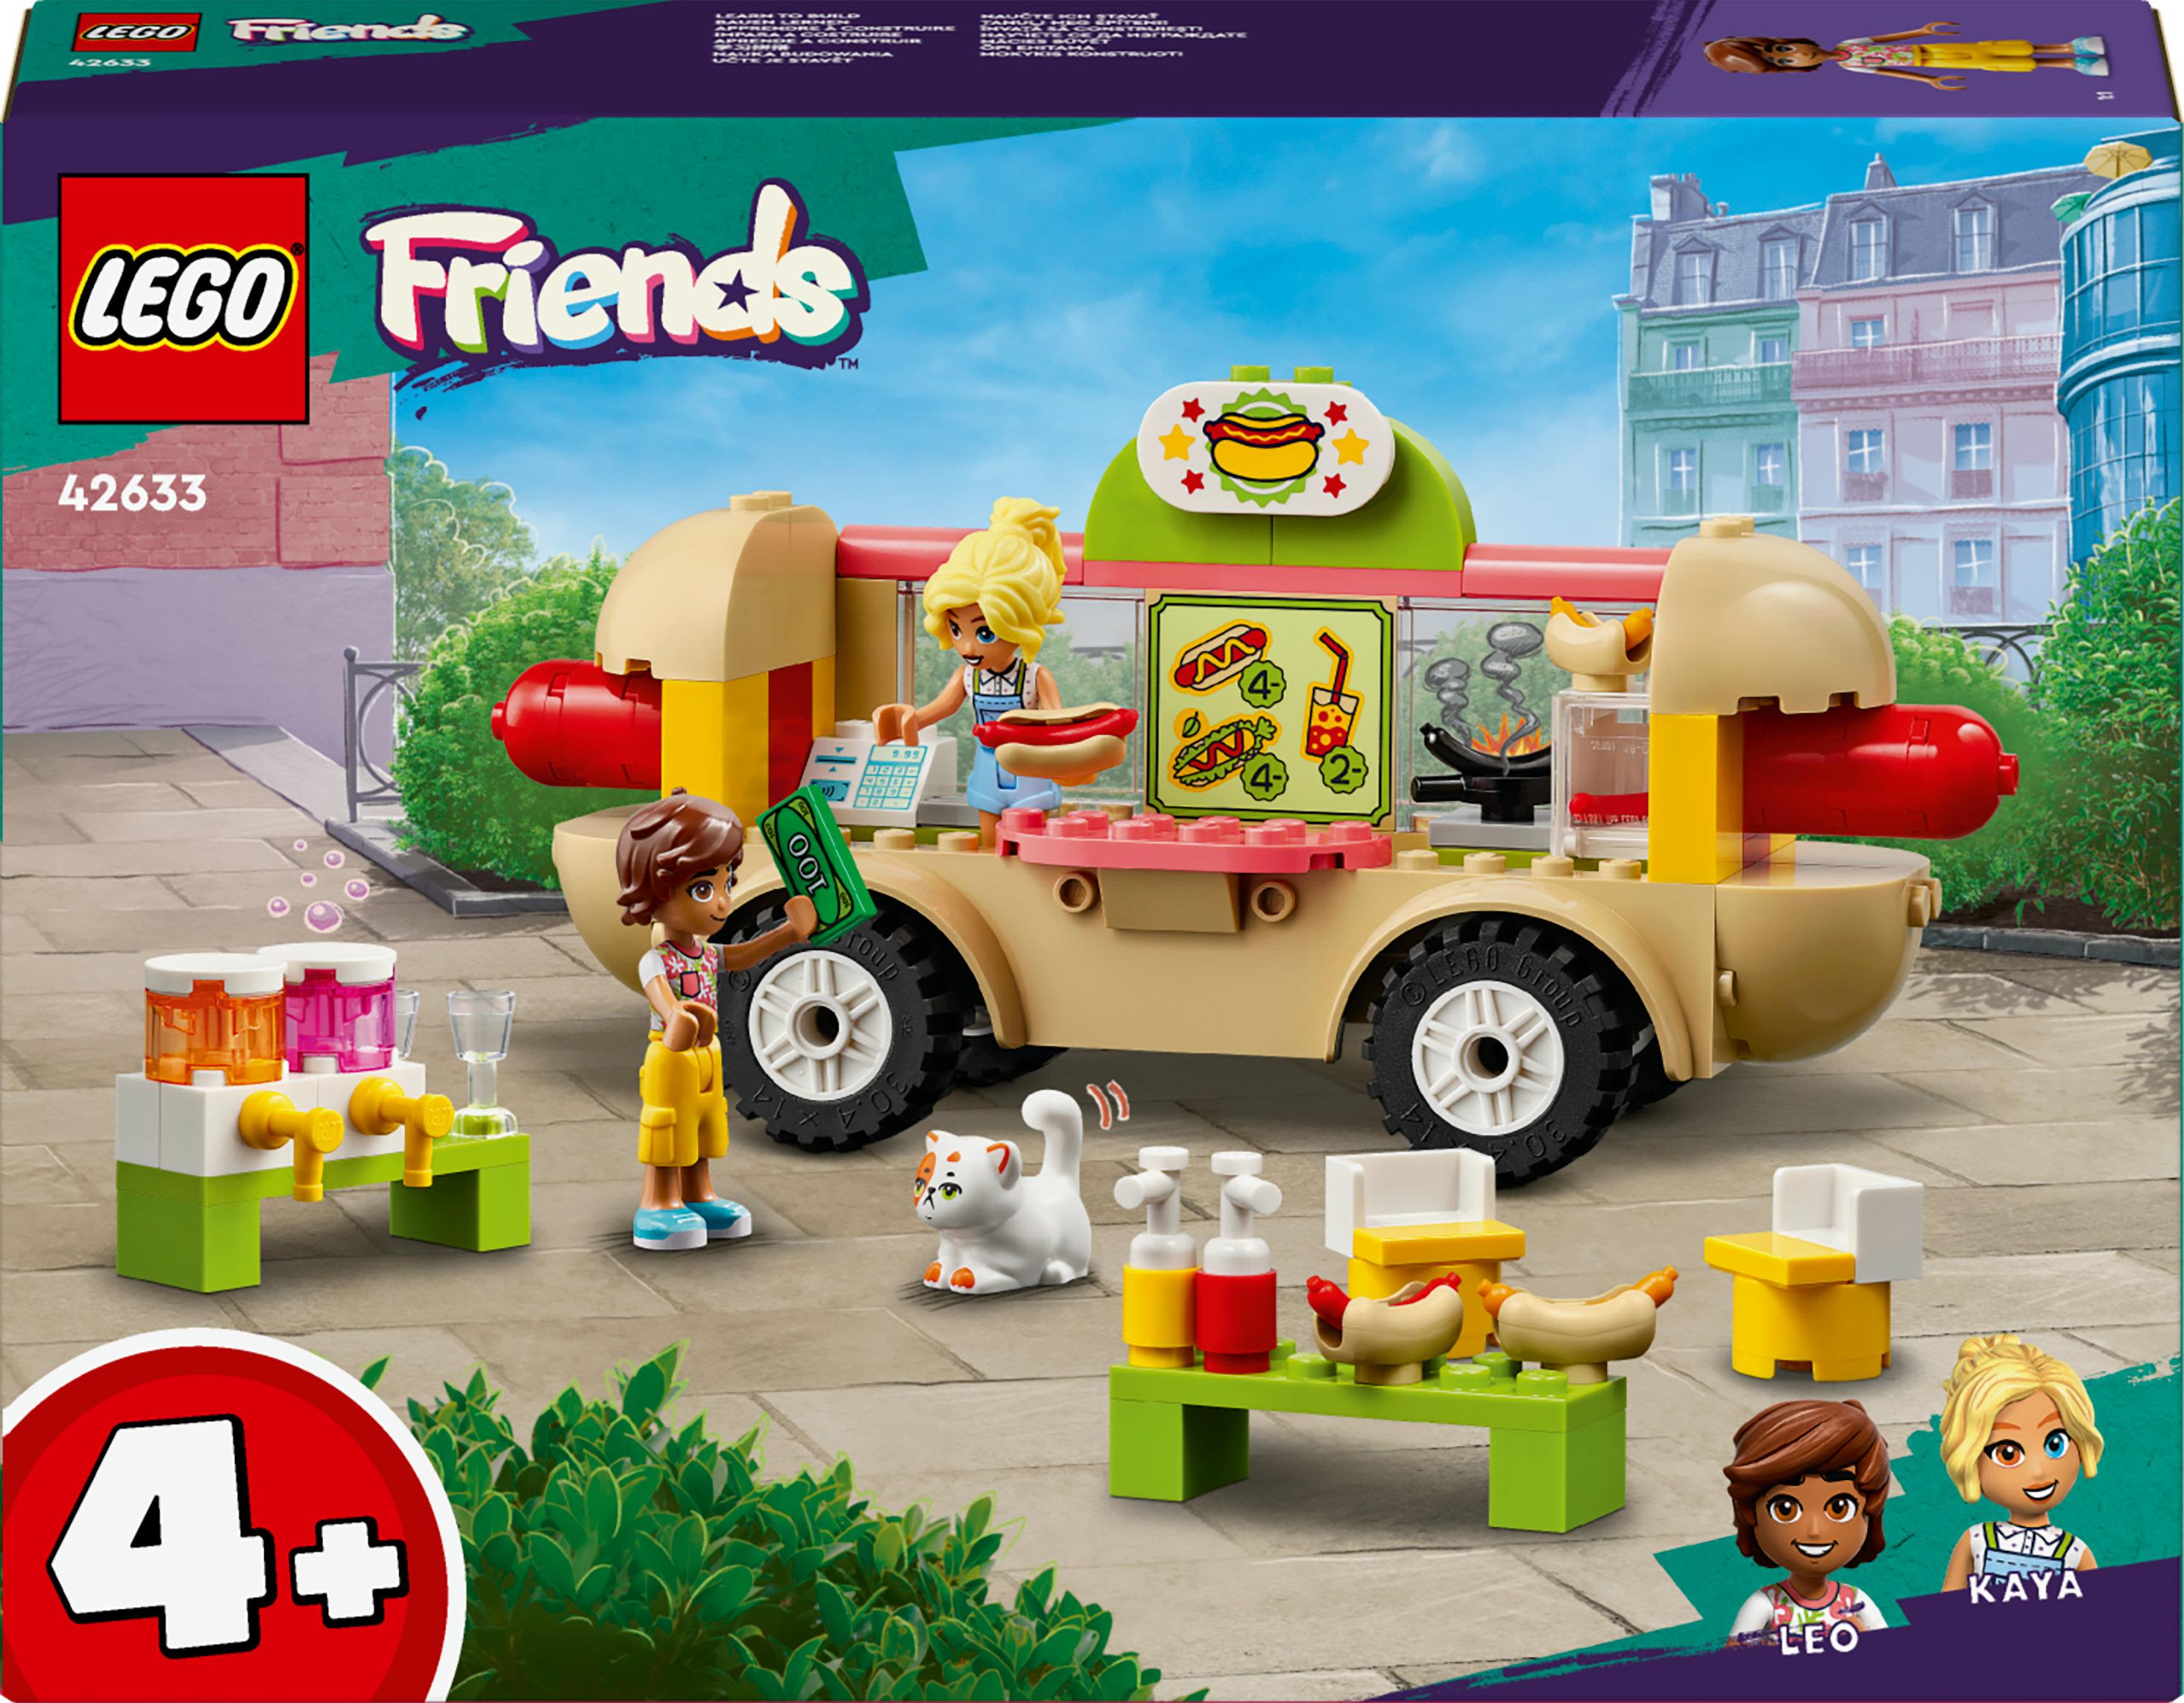 LEGO Friends 42633 Food